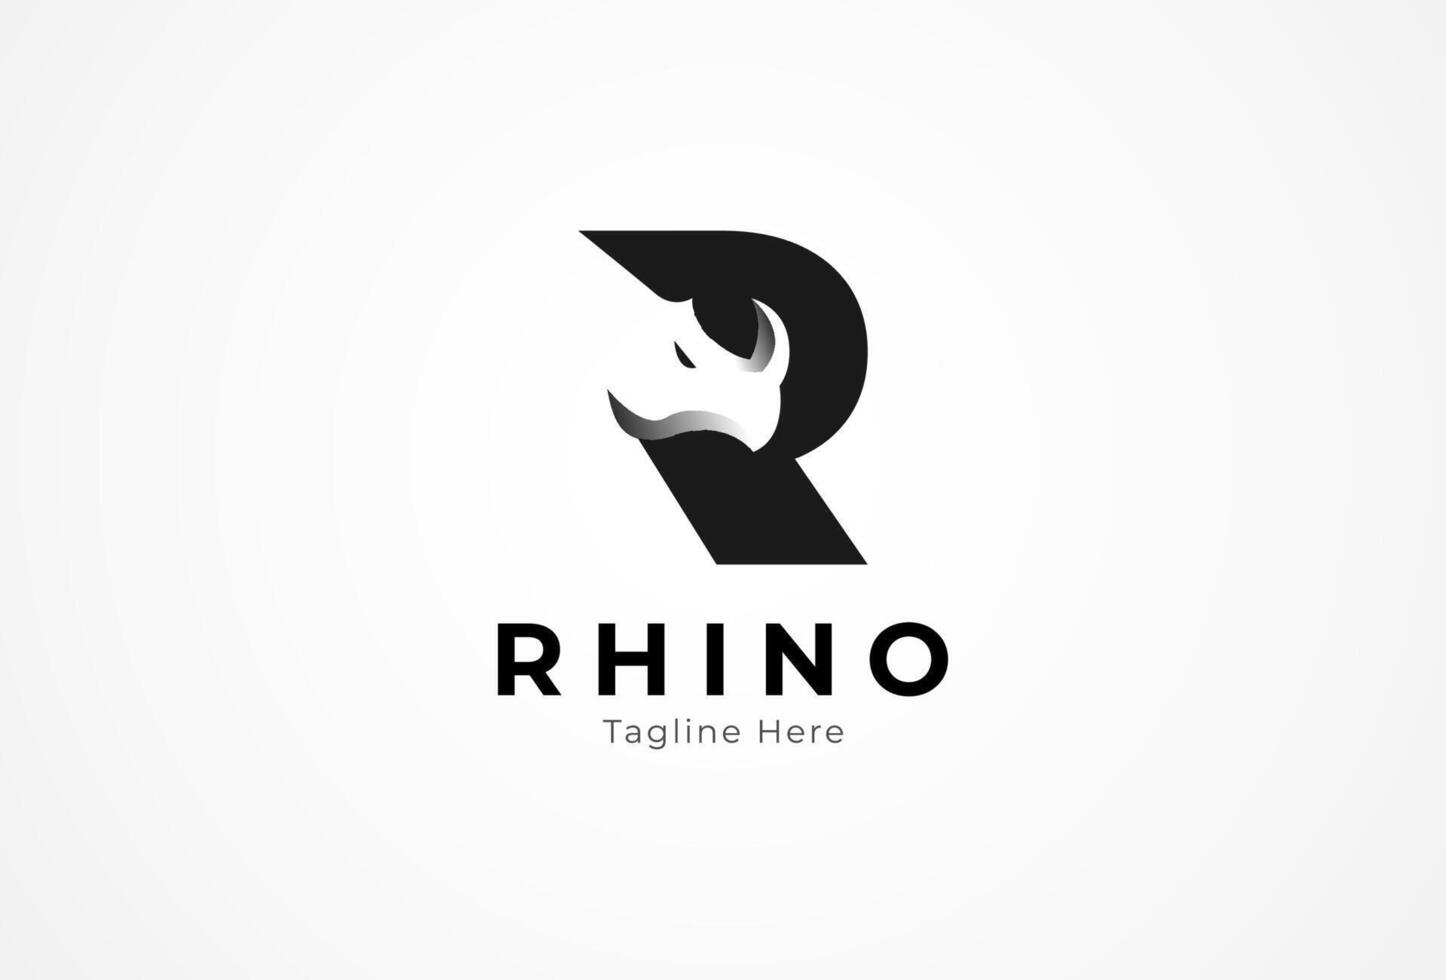 lettre r rhinocéros logo, initiale r avec négatif espace rhinocéros diriger, plat conception logo modèle, illustration vecteur